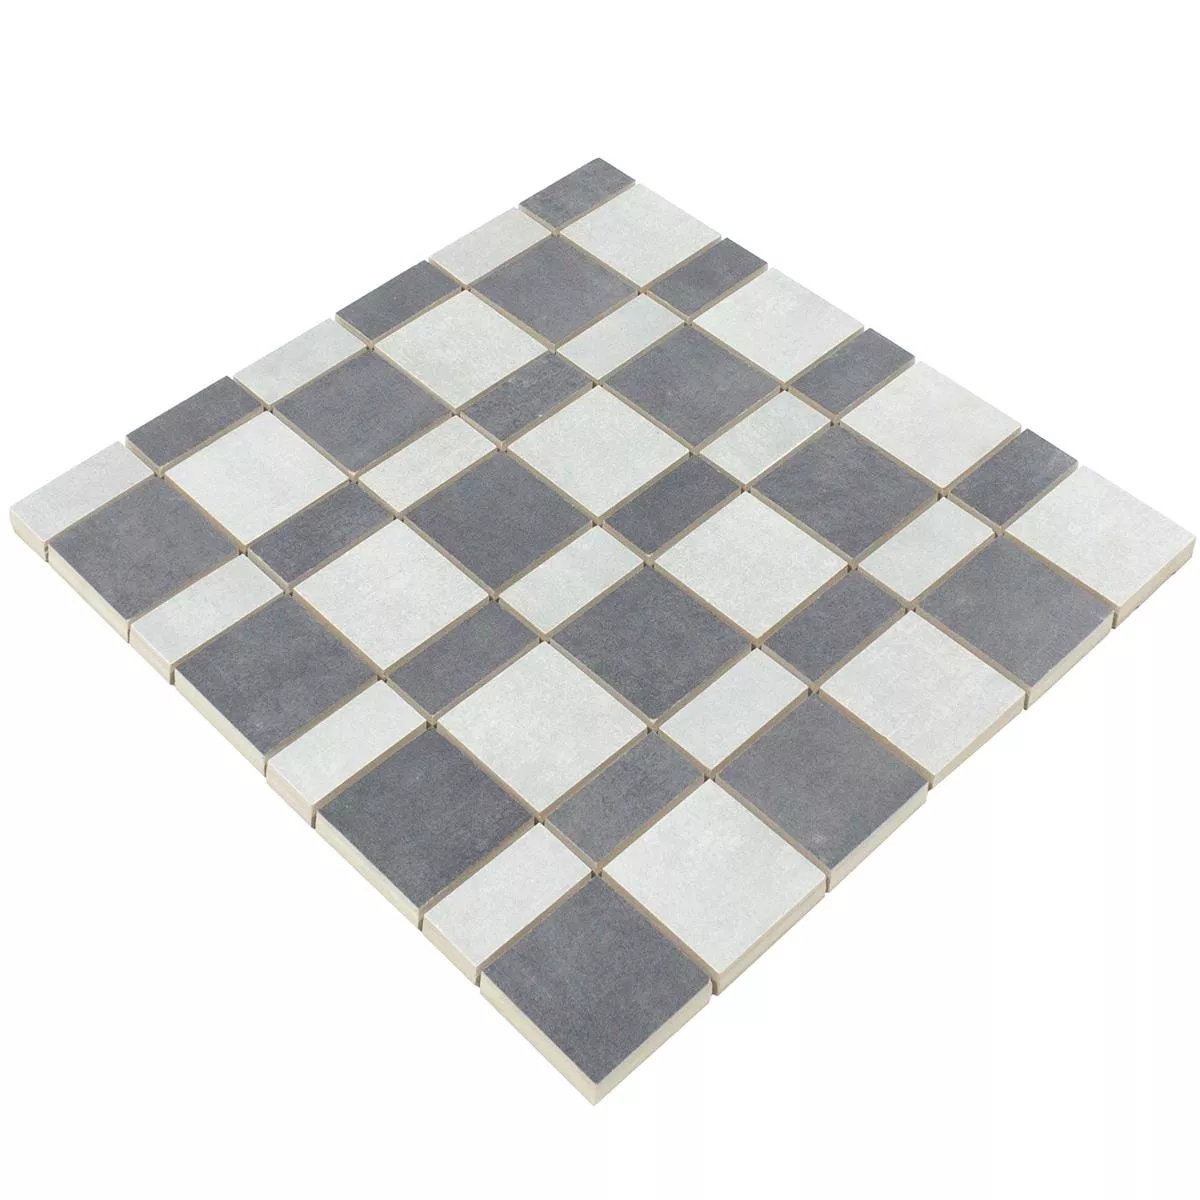 Sample Ceramic Mosaic Tile Kanorado Grey Mix